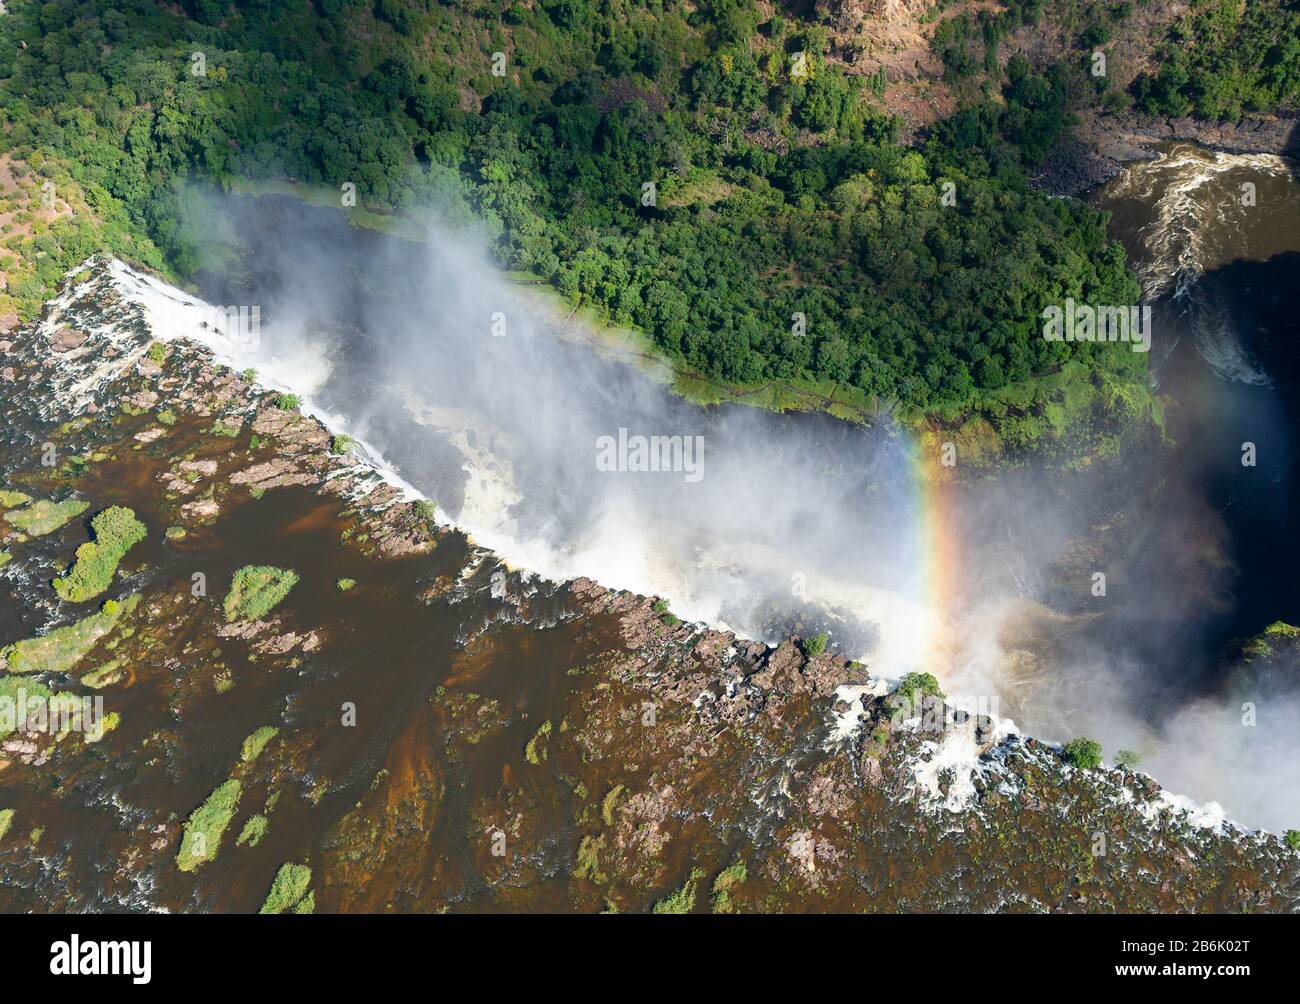 Vista aérea de las Cataratas Victoria en la frontera de Zimbabwe y Zambia en África. Corriente de agua que fluye por un cañón con un arco iris. Río Zambezi. Foto de stock